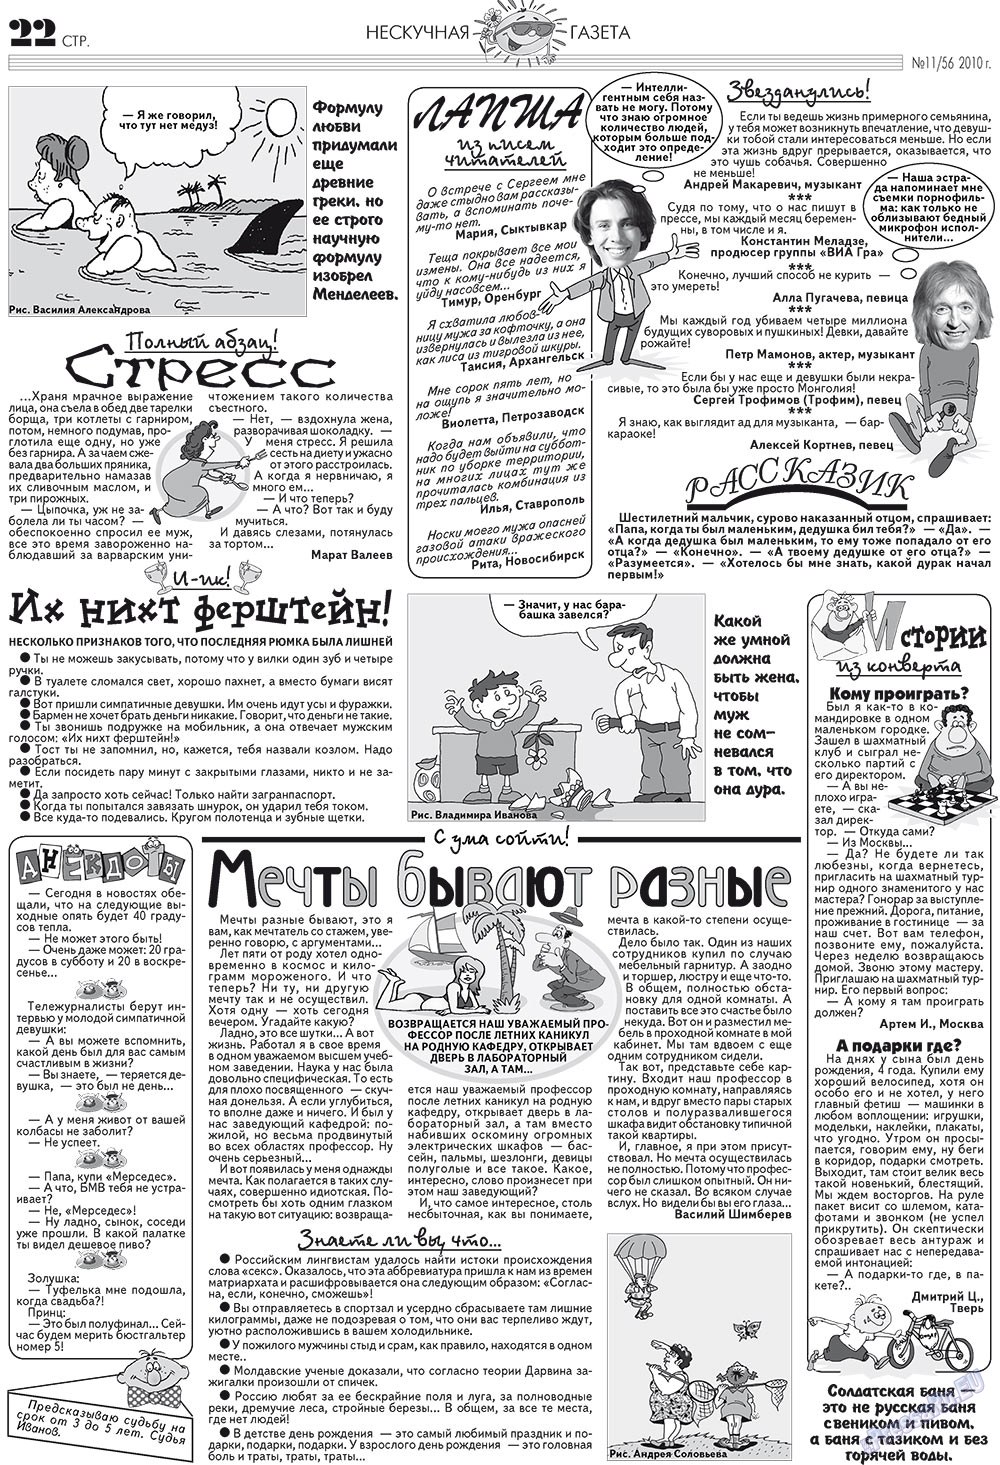 Нескучная газета (журнал). 2010 год, номер 11, стр. 18